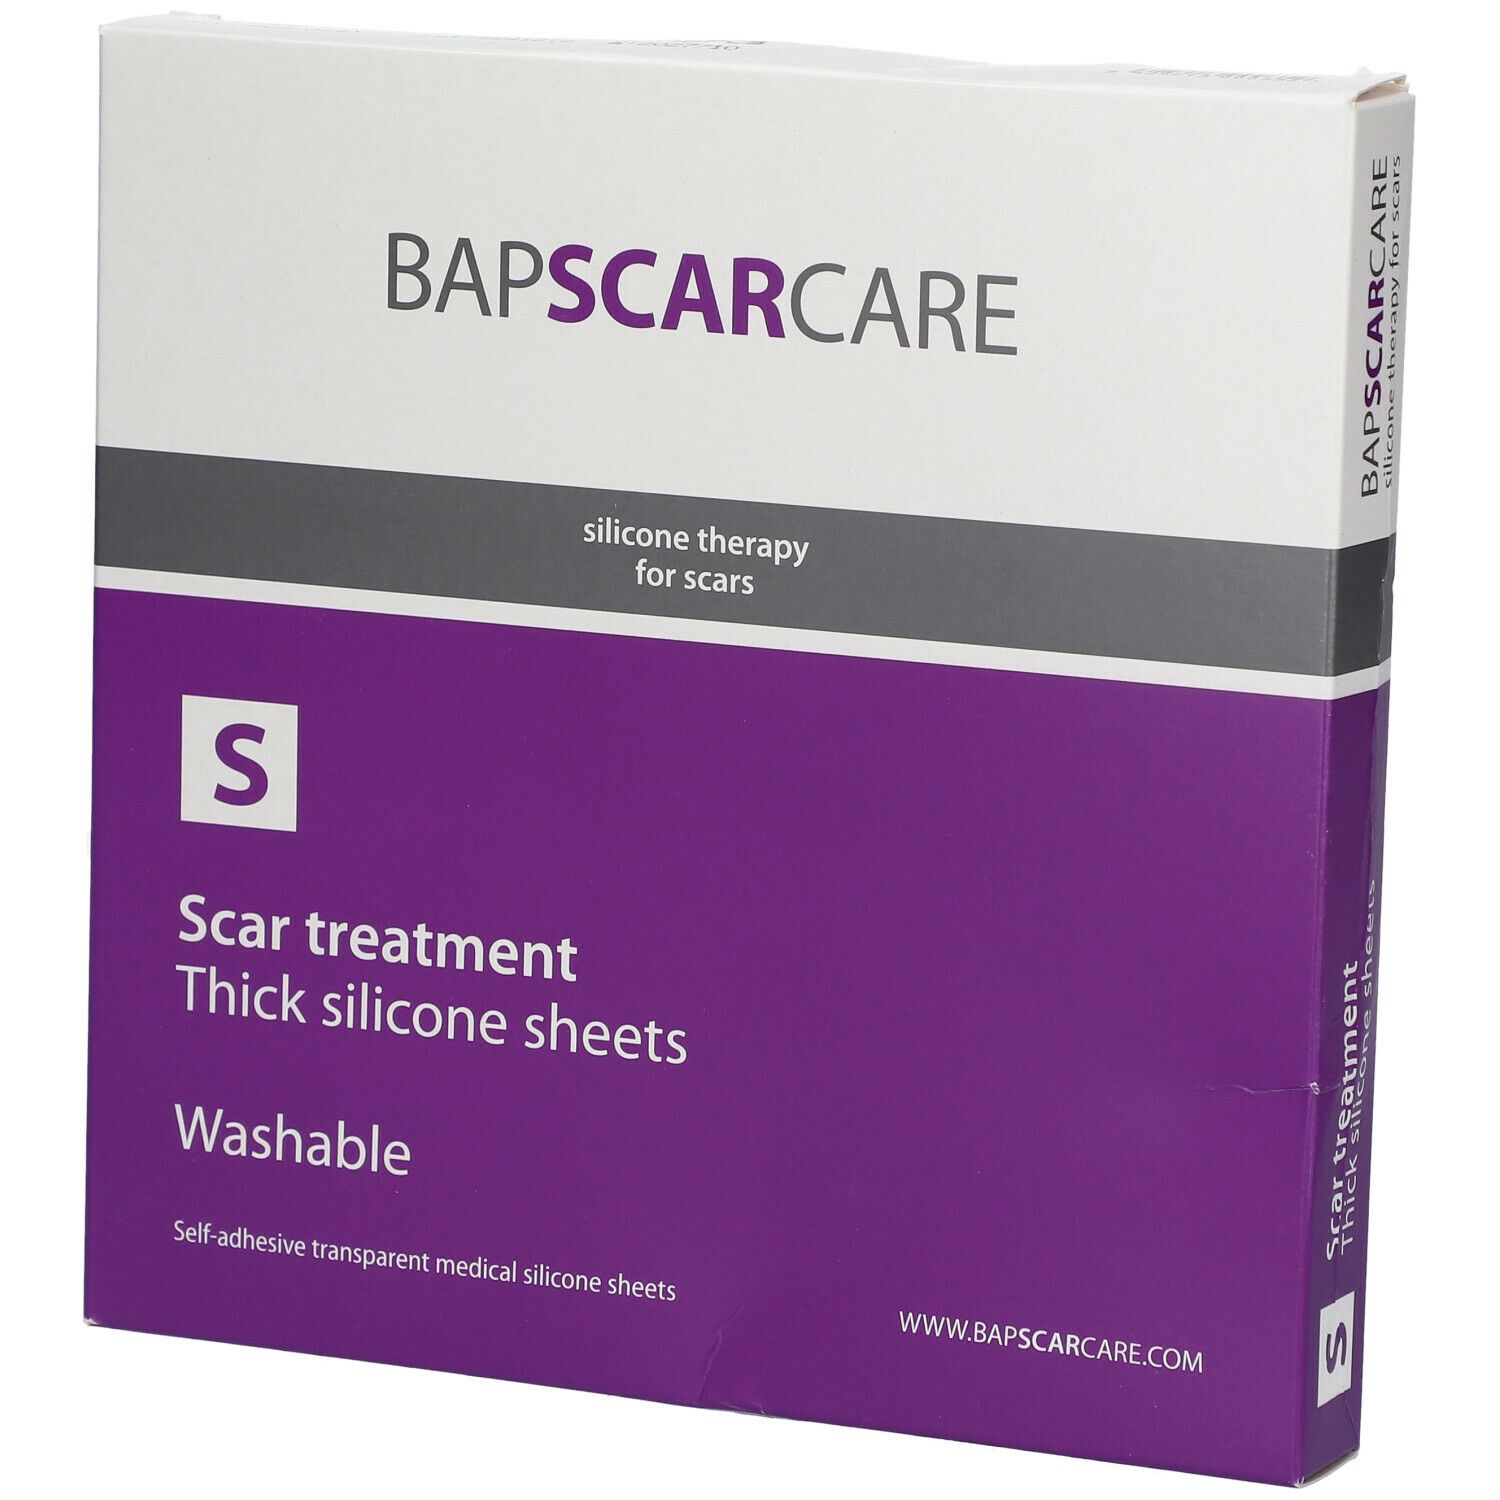 BAP Scar Care S Pansement abdominal lavable pour cicatrices 4 x 40 cm